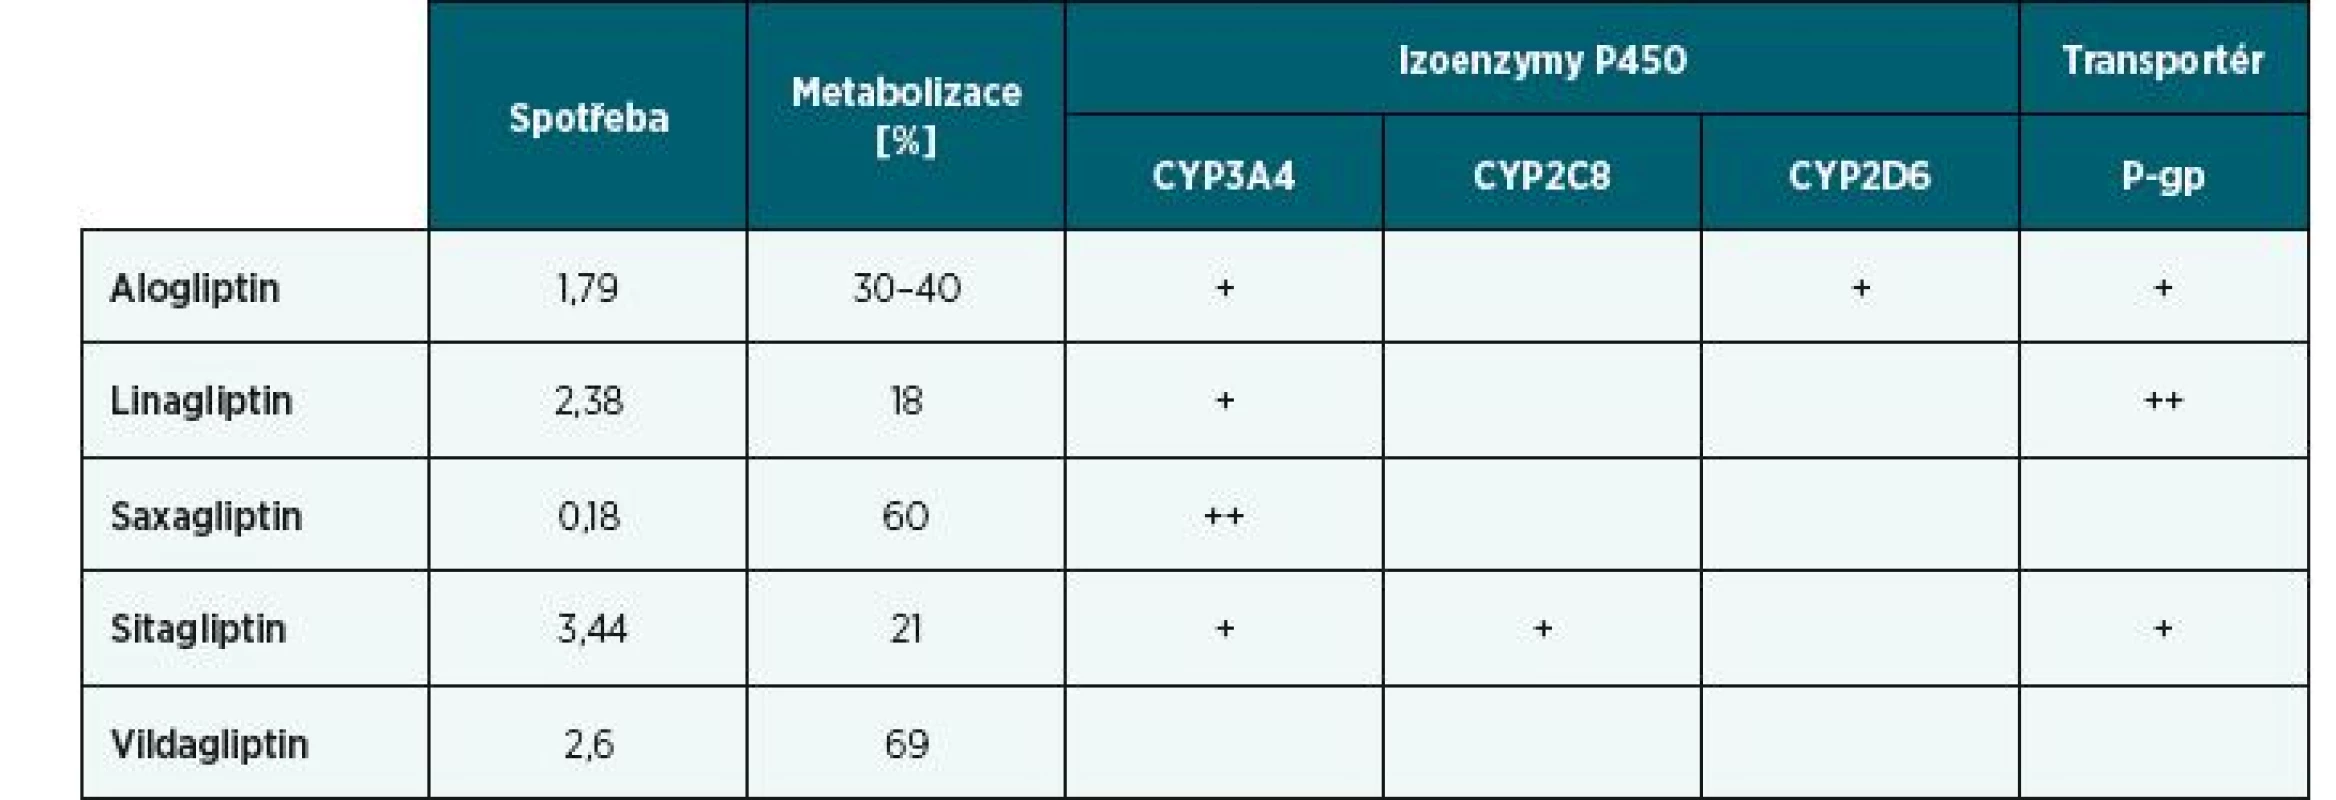 Spotřeby gliptinů v roce 2017 vyjádřené v DDD/1000 obyvatel/den, stupeň a způsob jejich metabolizace na izoenzymech P450 a transportu prostřednictvím P-gp